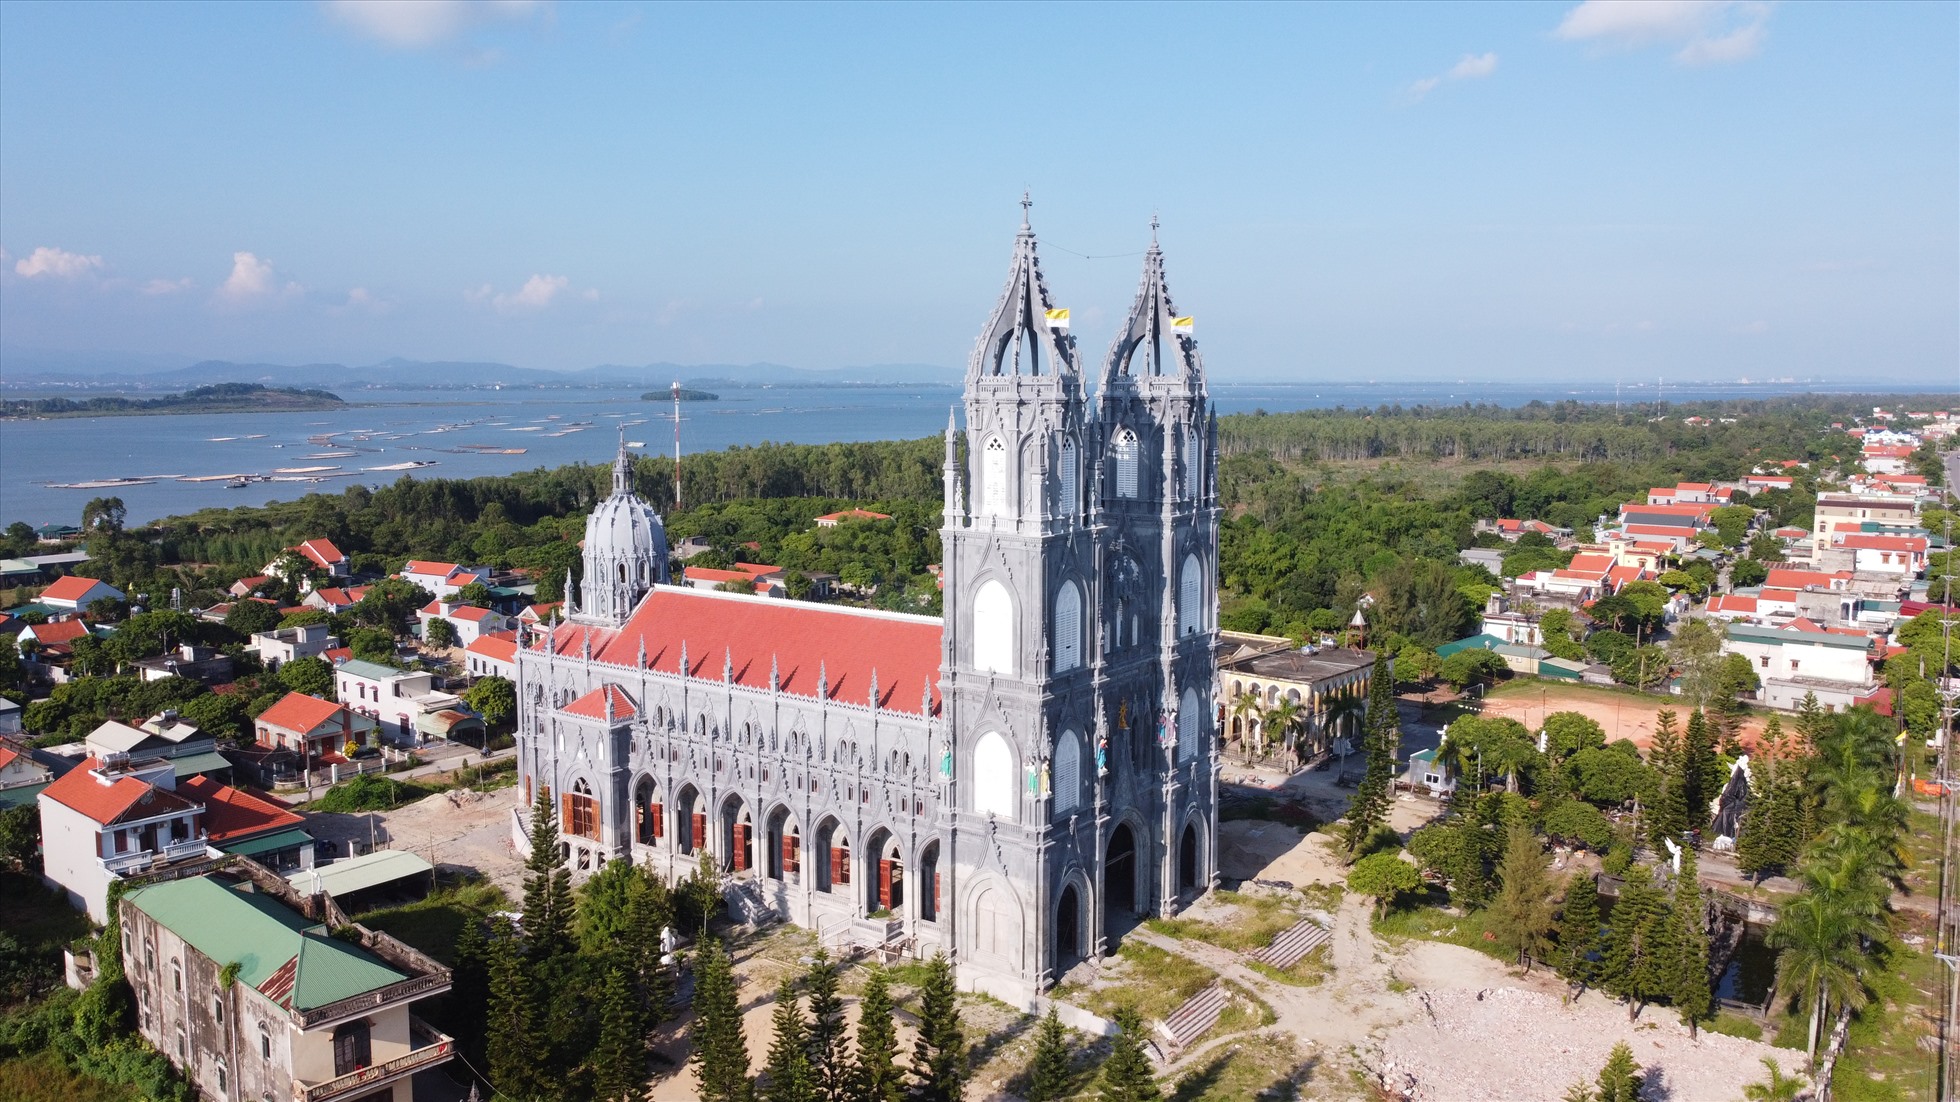 Nhà thờ Trà Cổ được mệnh danh là một trong những nhà thờ có kiến trúc đẹp nhất Việt Nam. Ảnh: Nguyễn Hưng